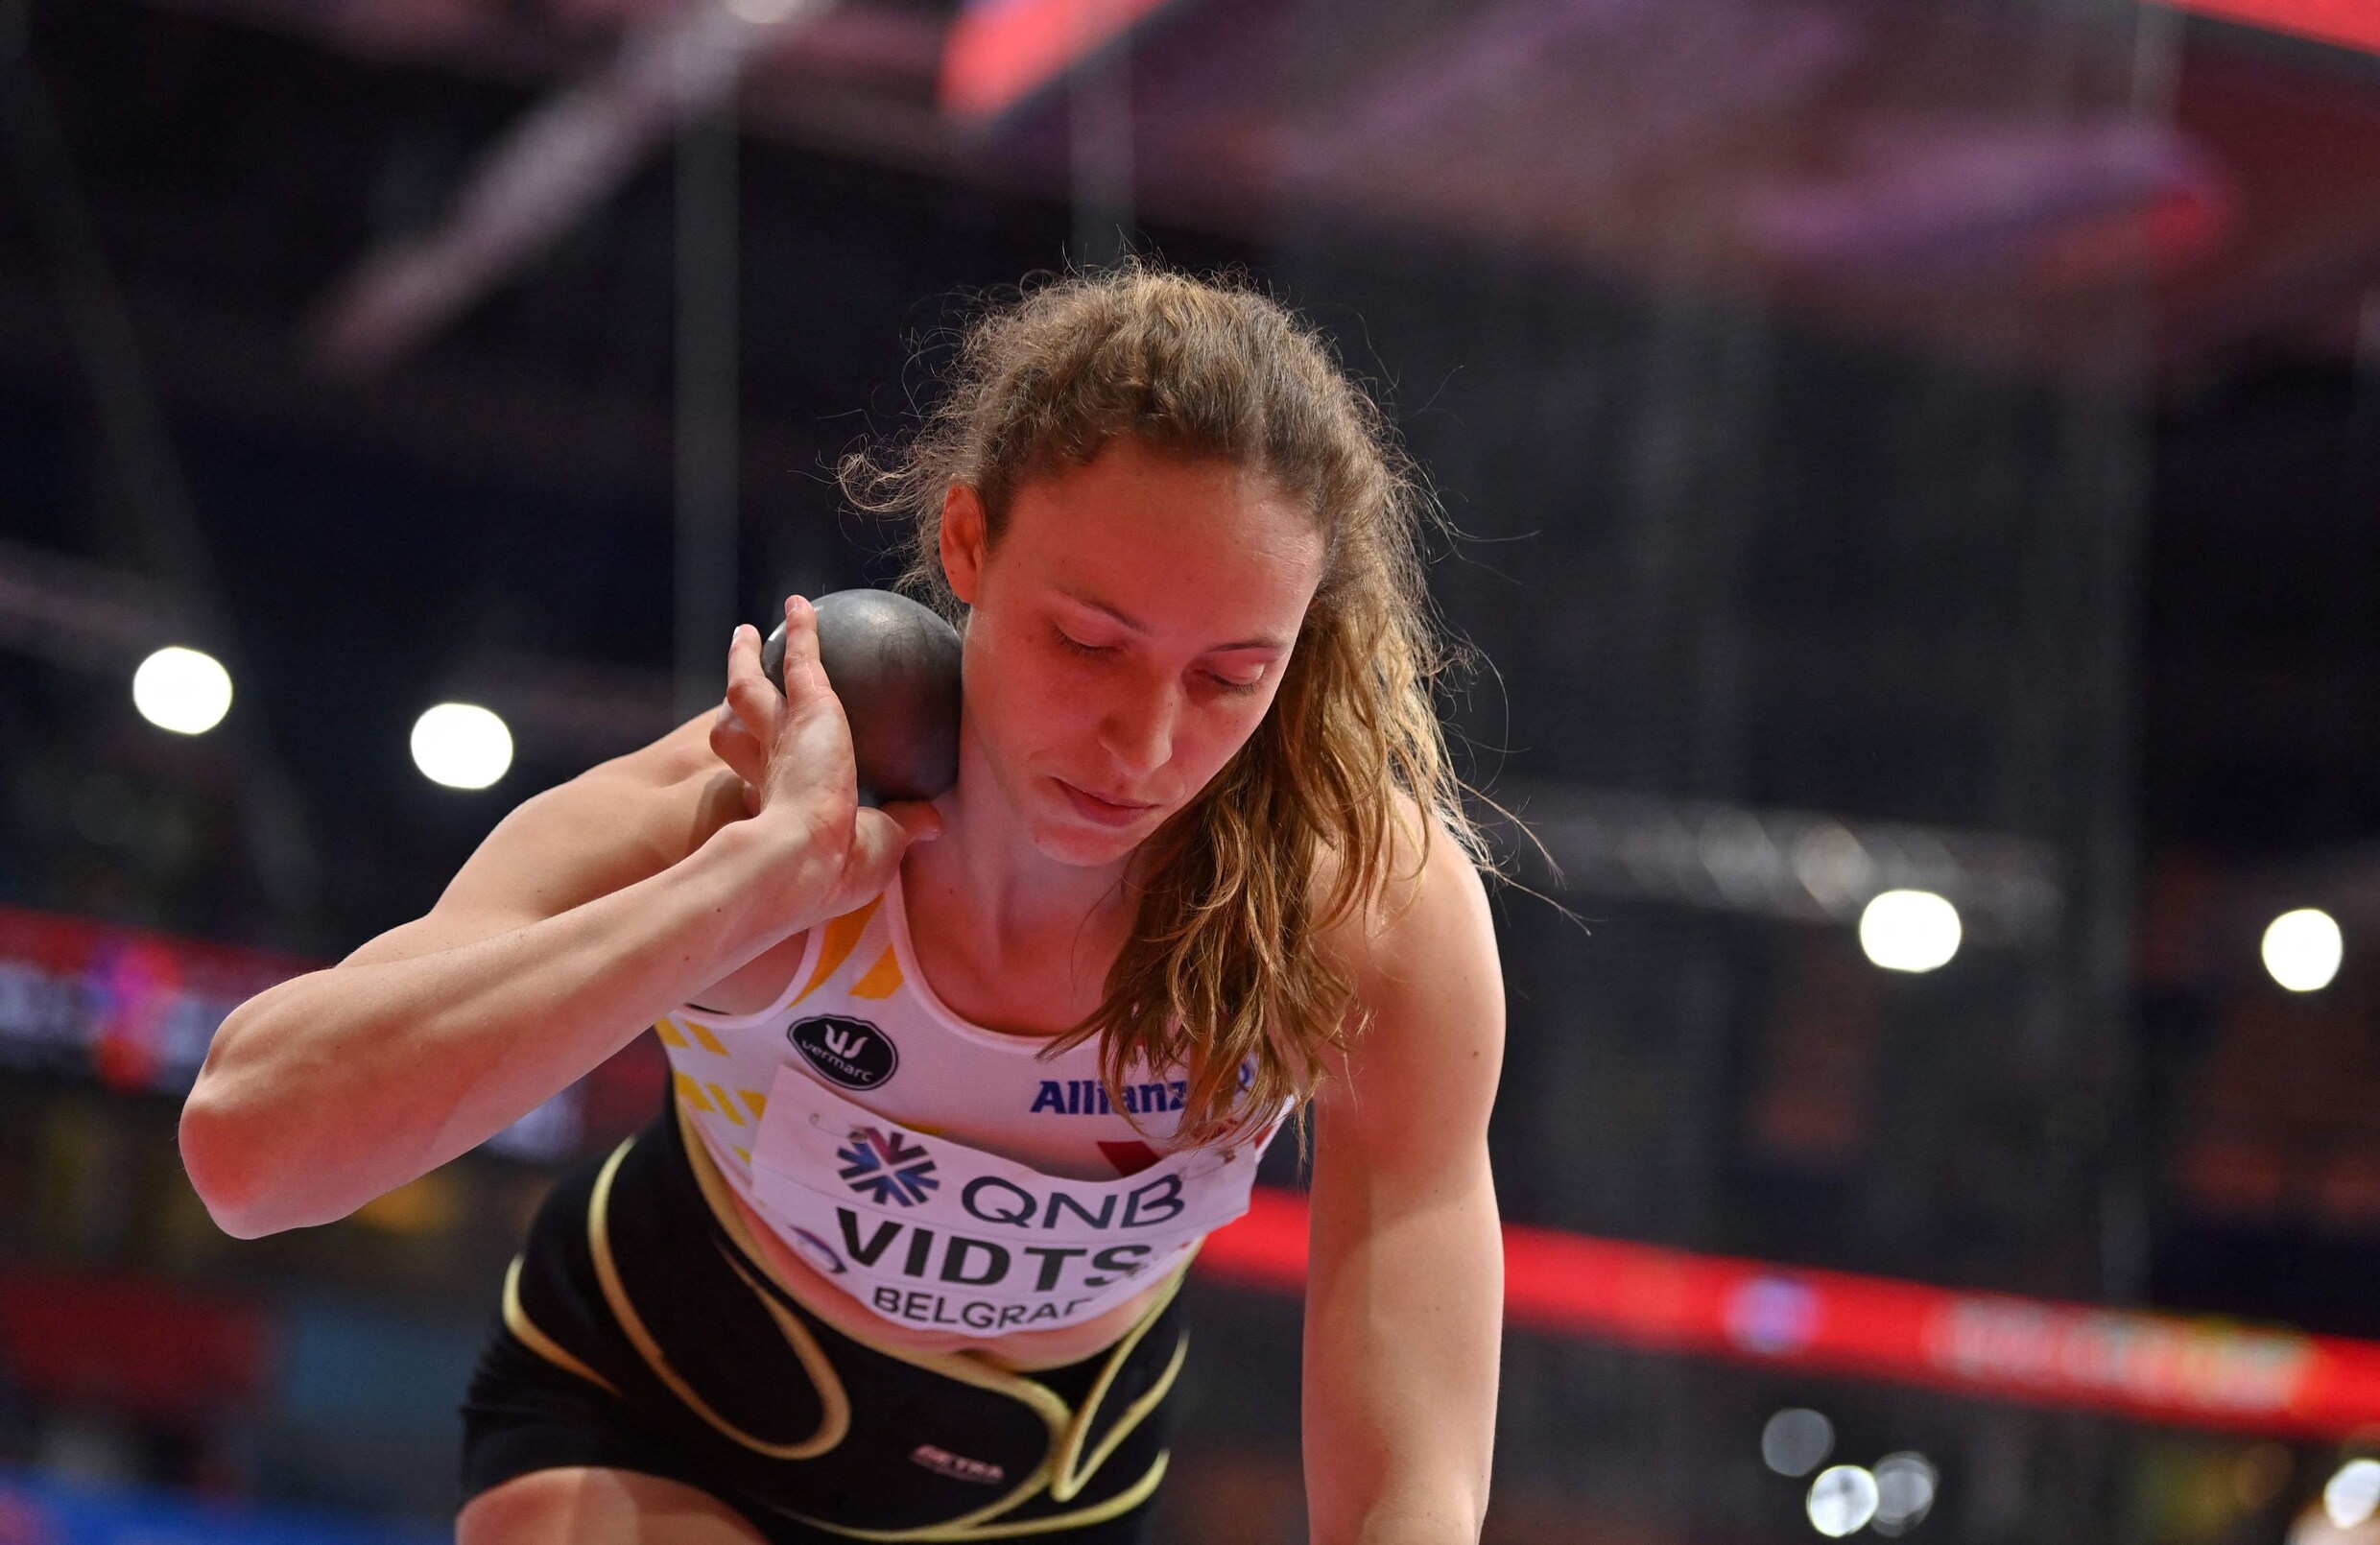 Goud! Noor Vidts kroont zich tot indoor wereldkampioene in vijfkamp